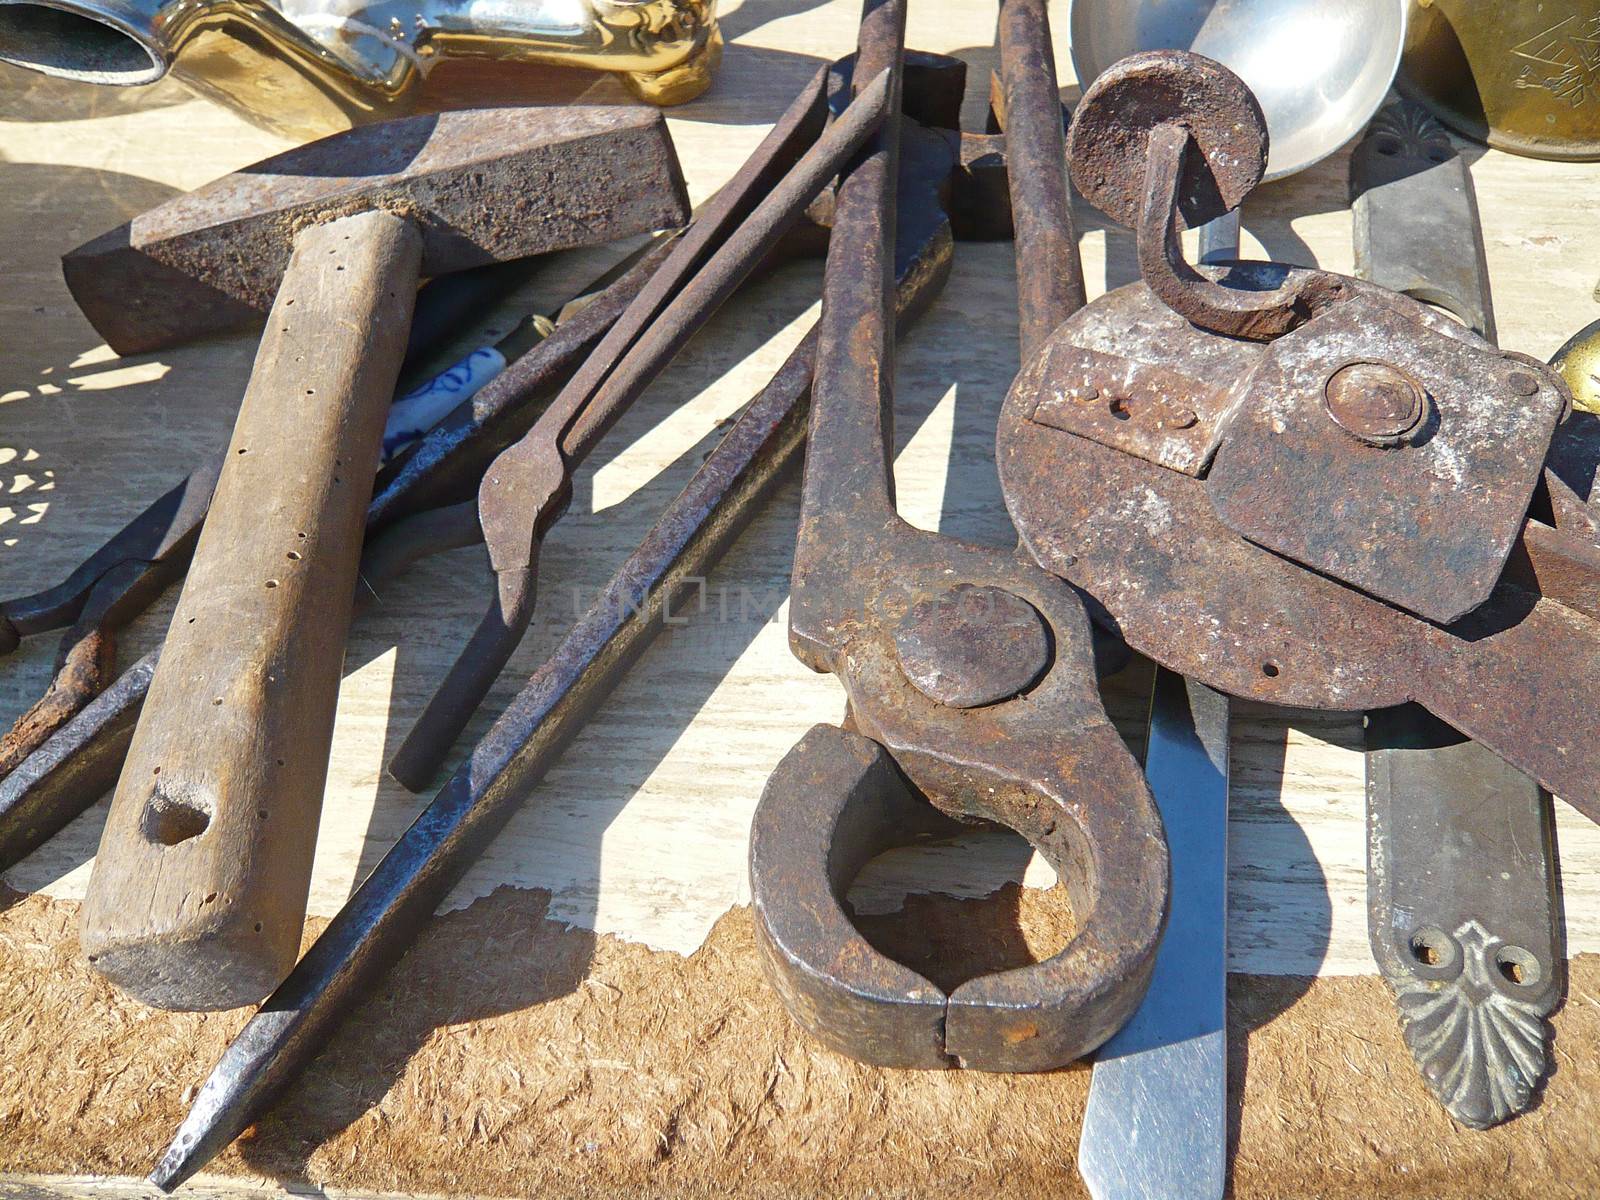 Old Vinatge Tools on flea market